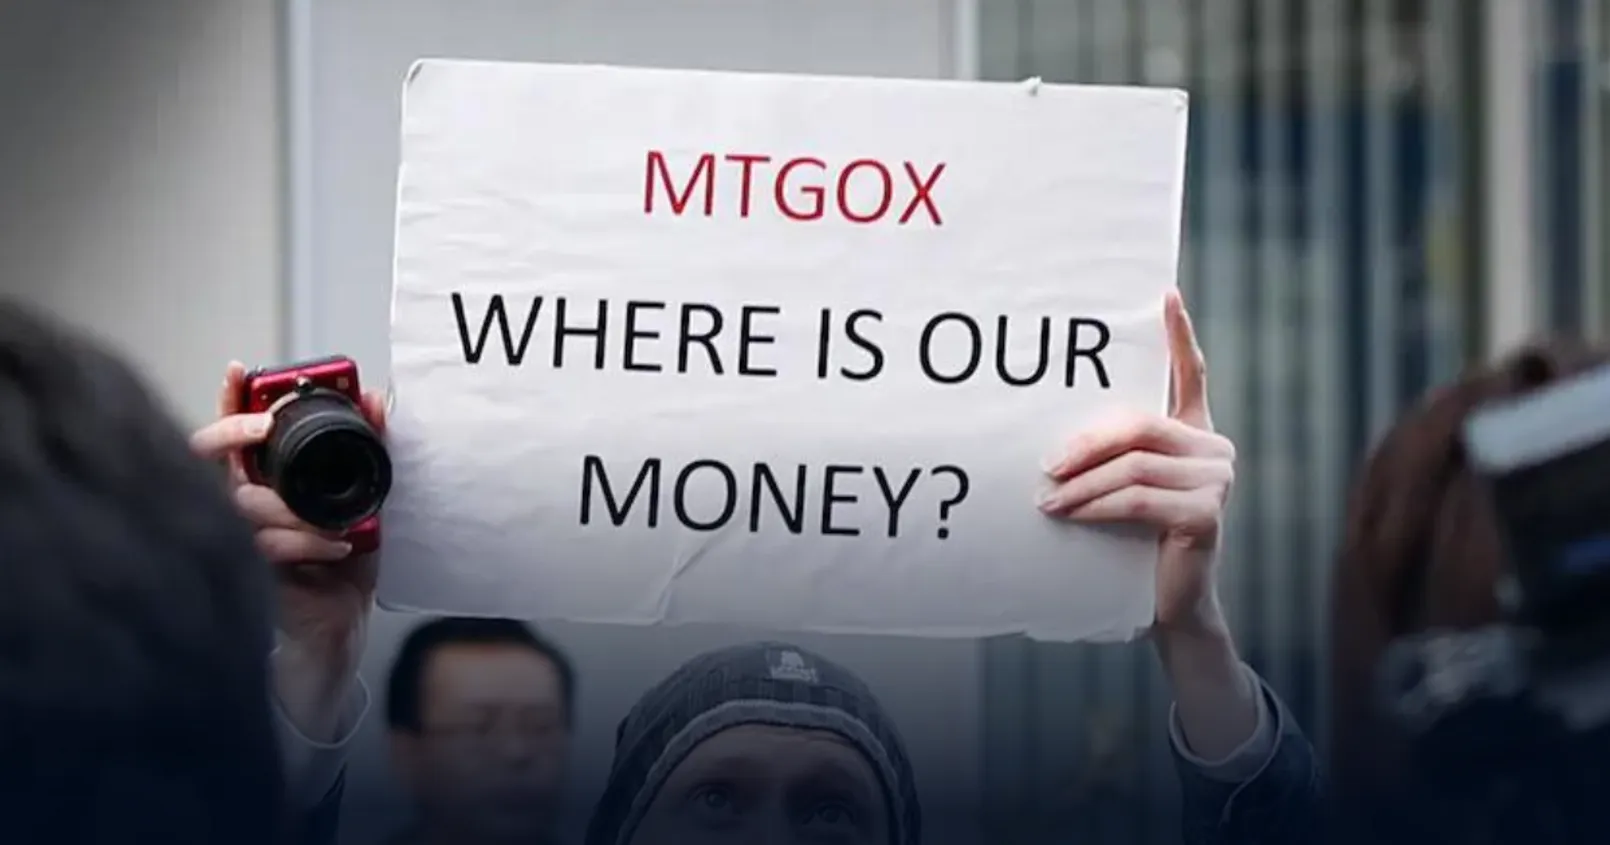 Glassnode ตรวจสอบข่าวลือ "Mt. Gox เริ่มคืน Bitcoin ให้ผู้ใช้งาน" พบว่าไม่เป็นความริง